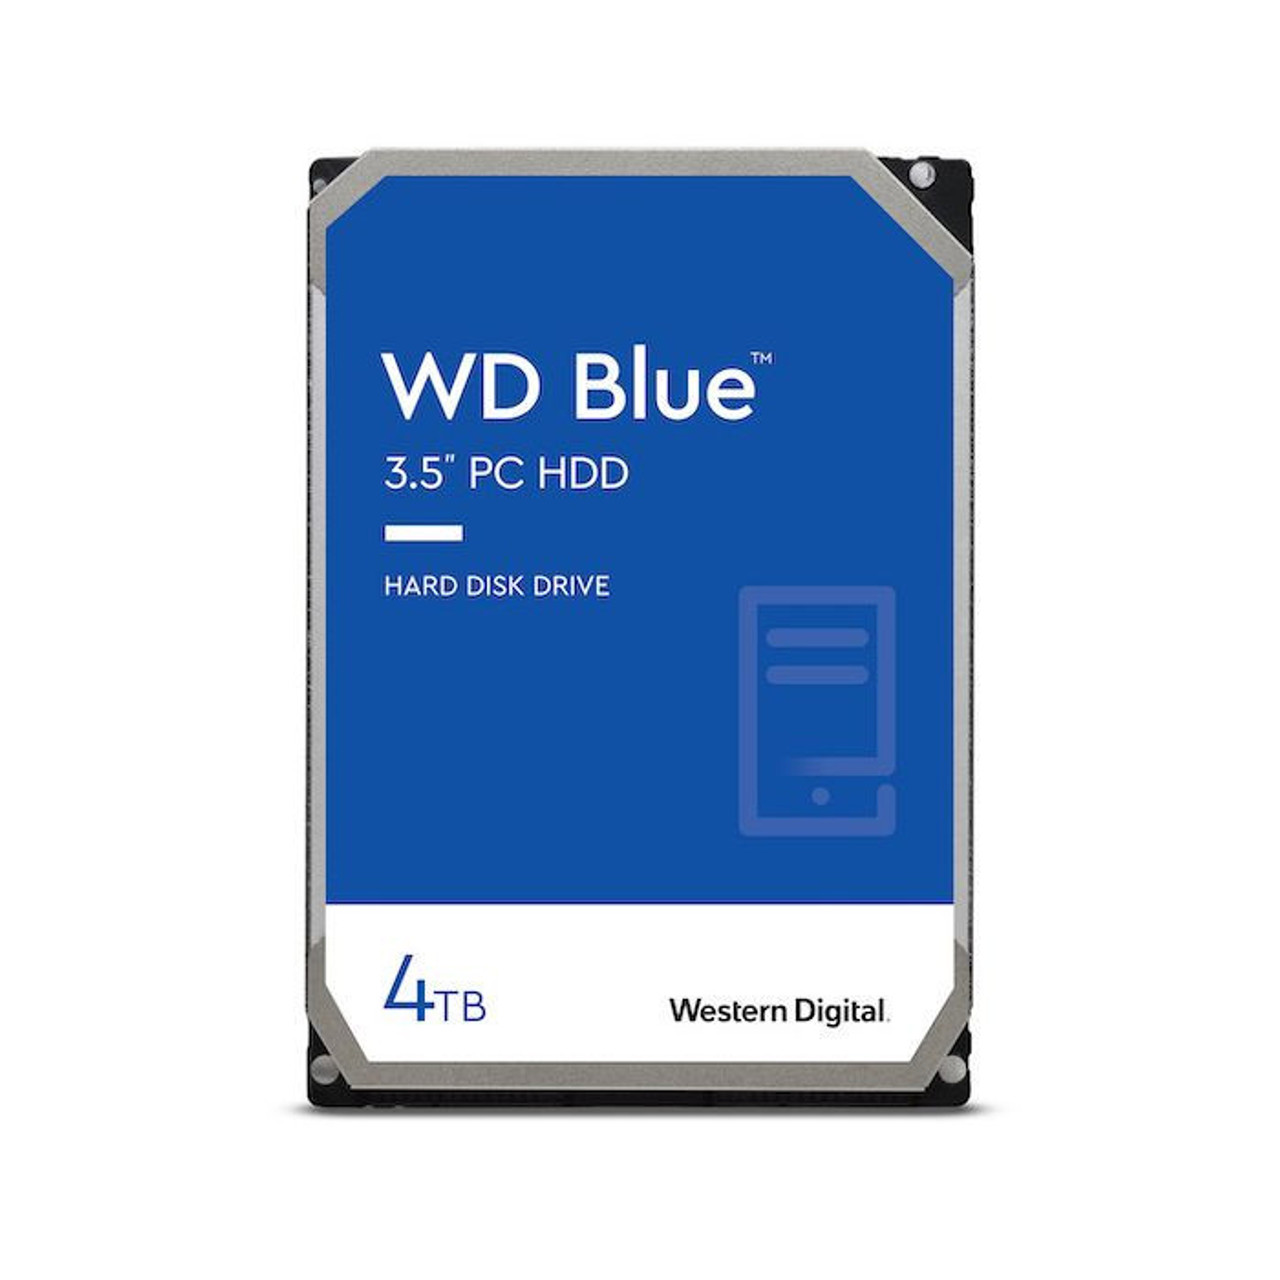  <b>3.5" SATA Drive:</b> Blue - 4TB 5400RPM SATA III 6Gb/s 256MB Cache 3.5" Desktop Hard Drive  